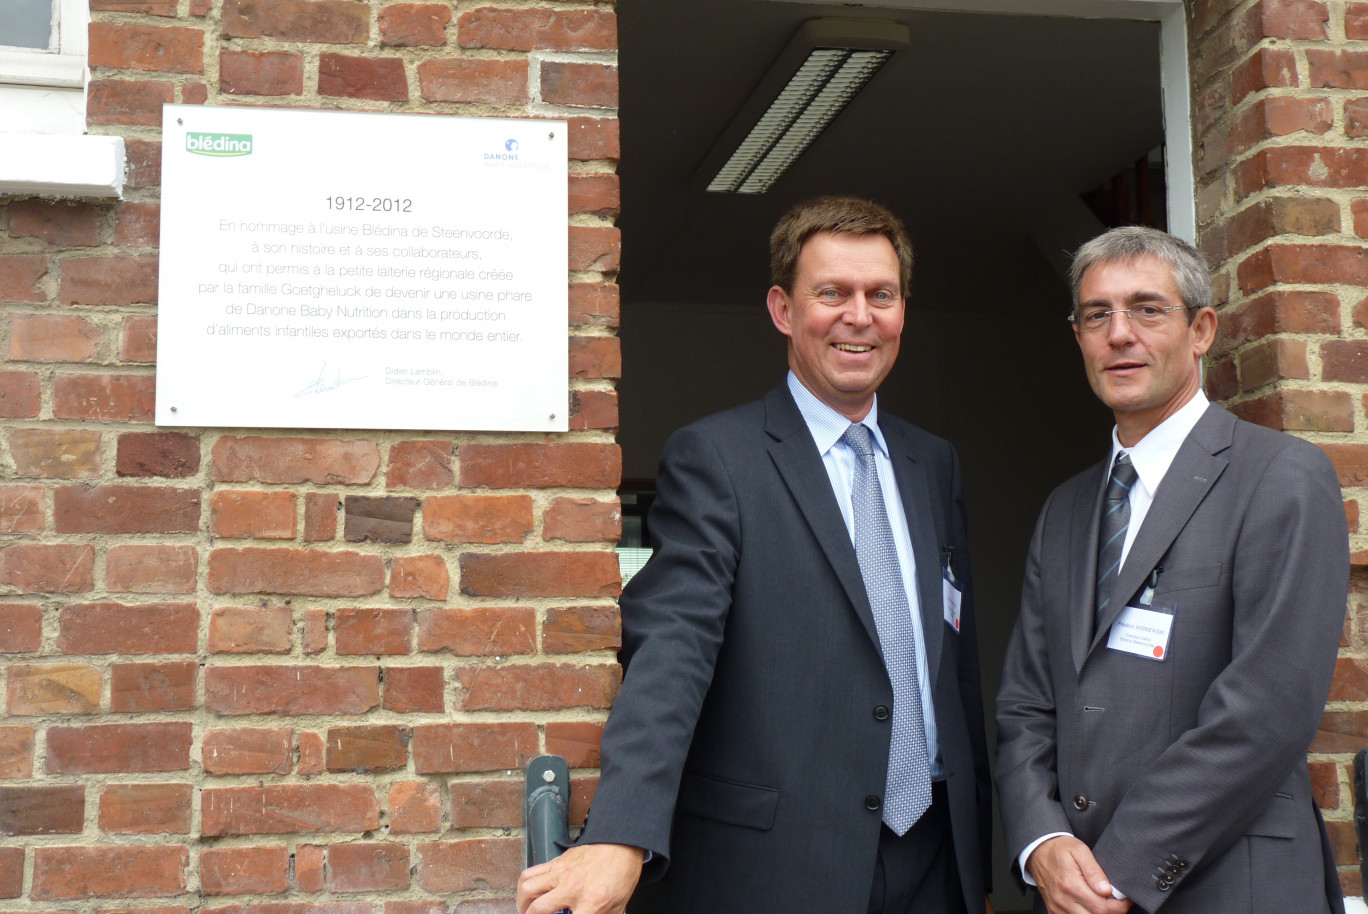 De gauche à droite : Fréderic Wisniewski, directeur de l'usine de Steendvoorde et Didier Lamblin, directeur général de Blédina.